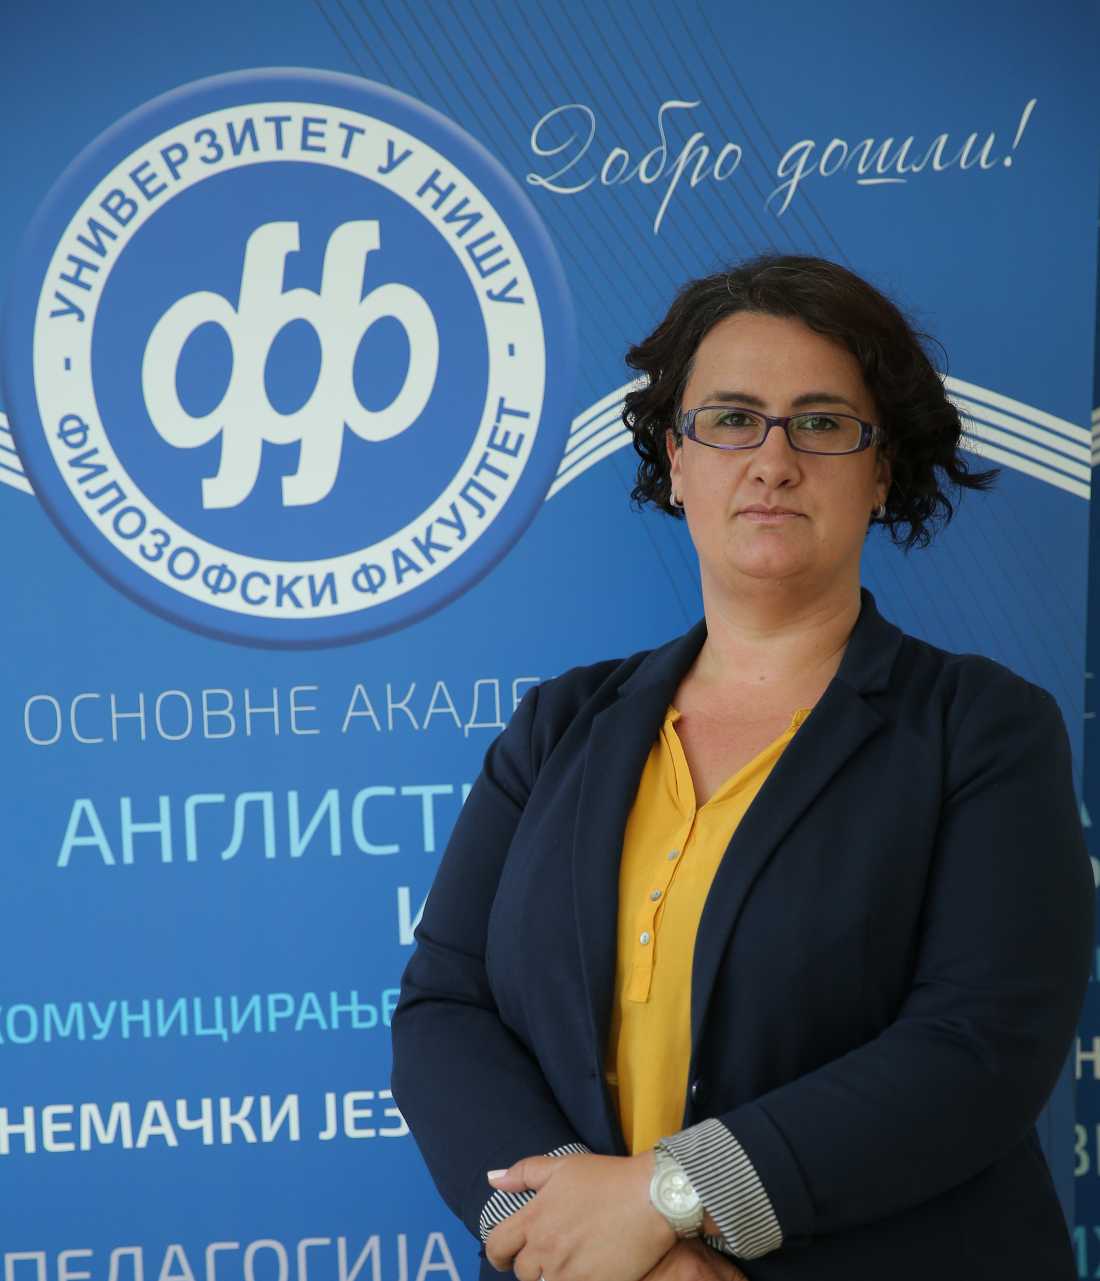 Јелена Лепојевић, Департман за руски језик и књижевност, Филозофски факултет